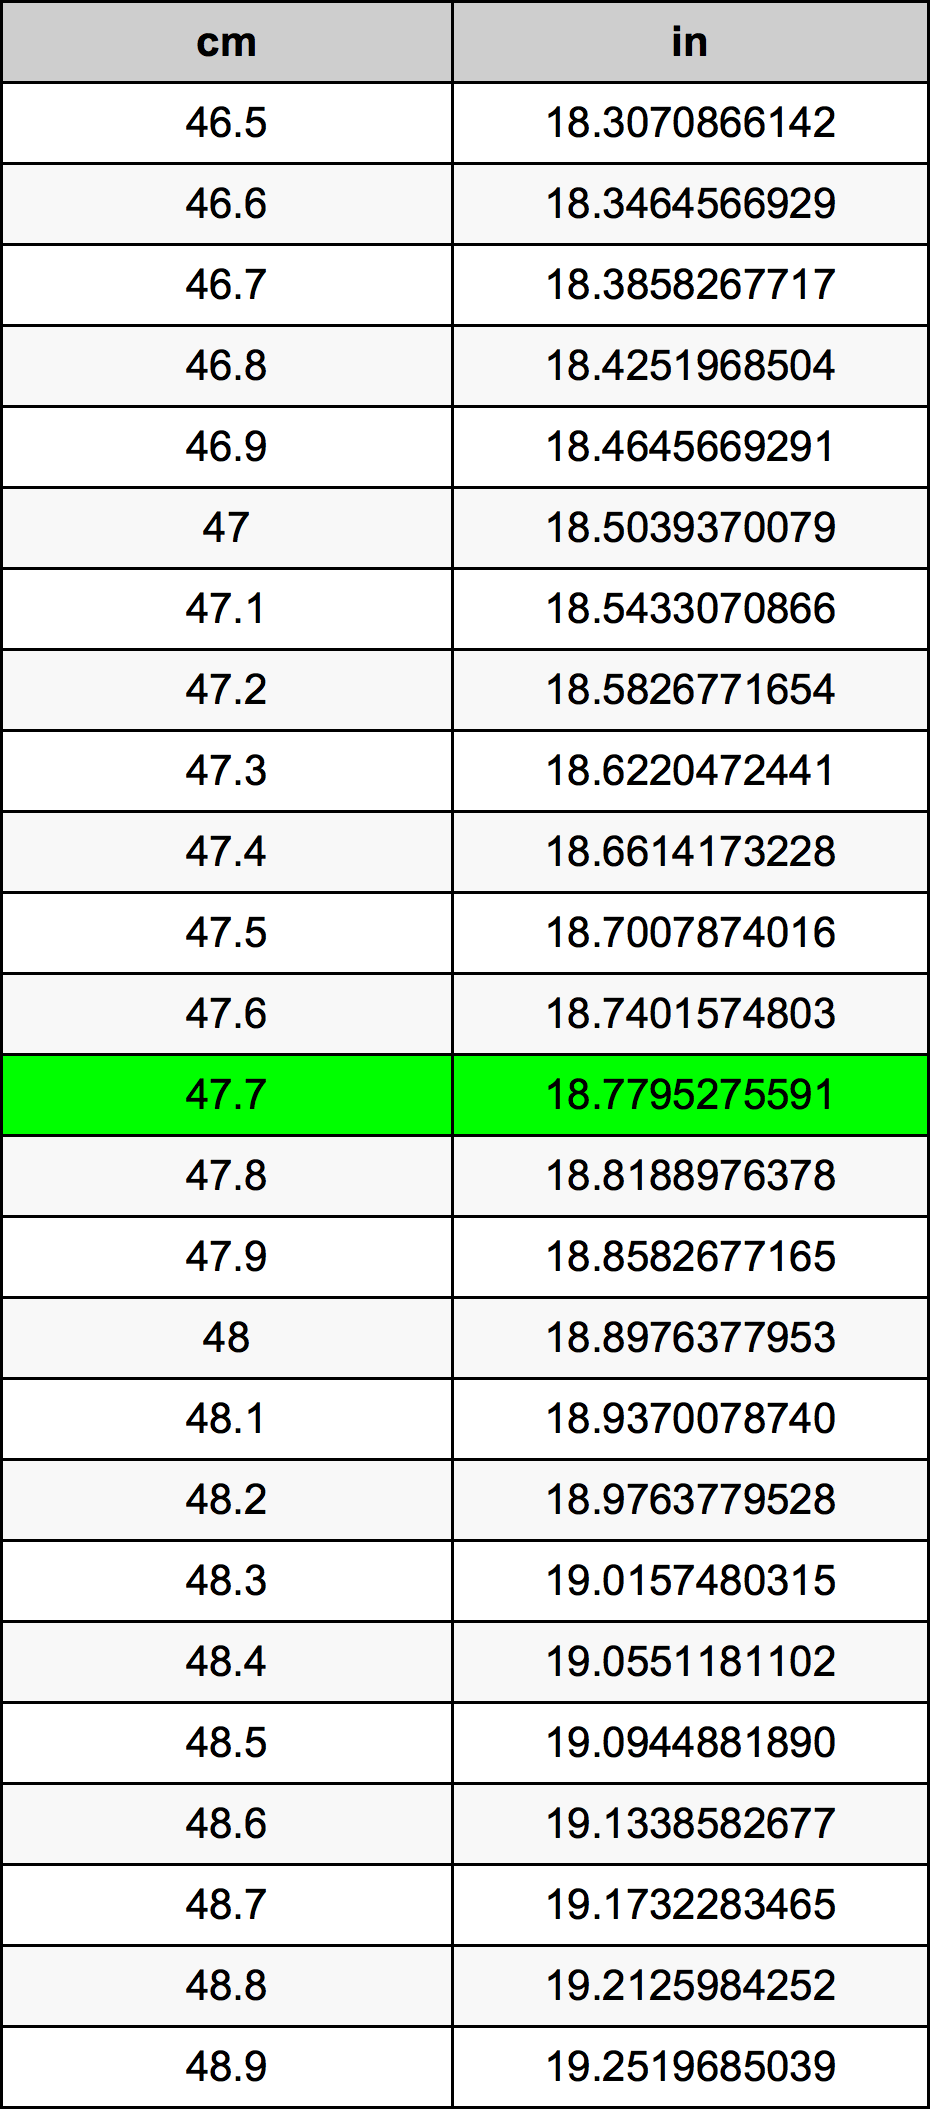 47.7 Centiméter átszámítási táblázat